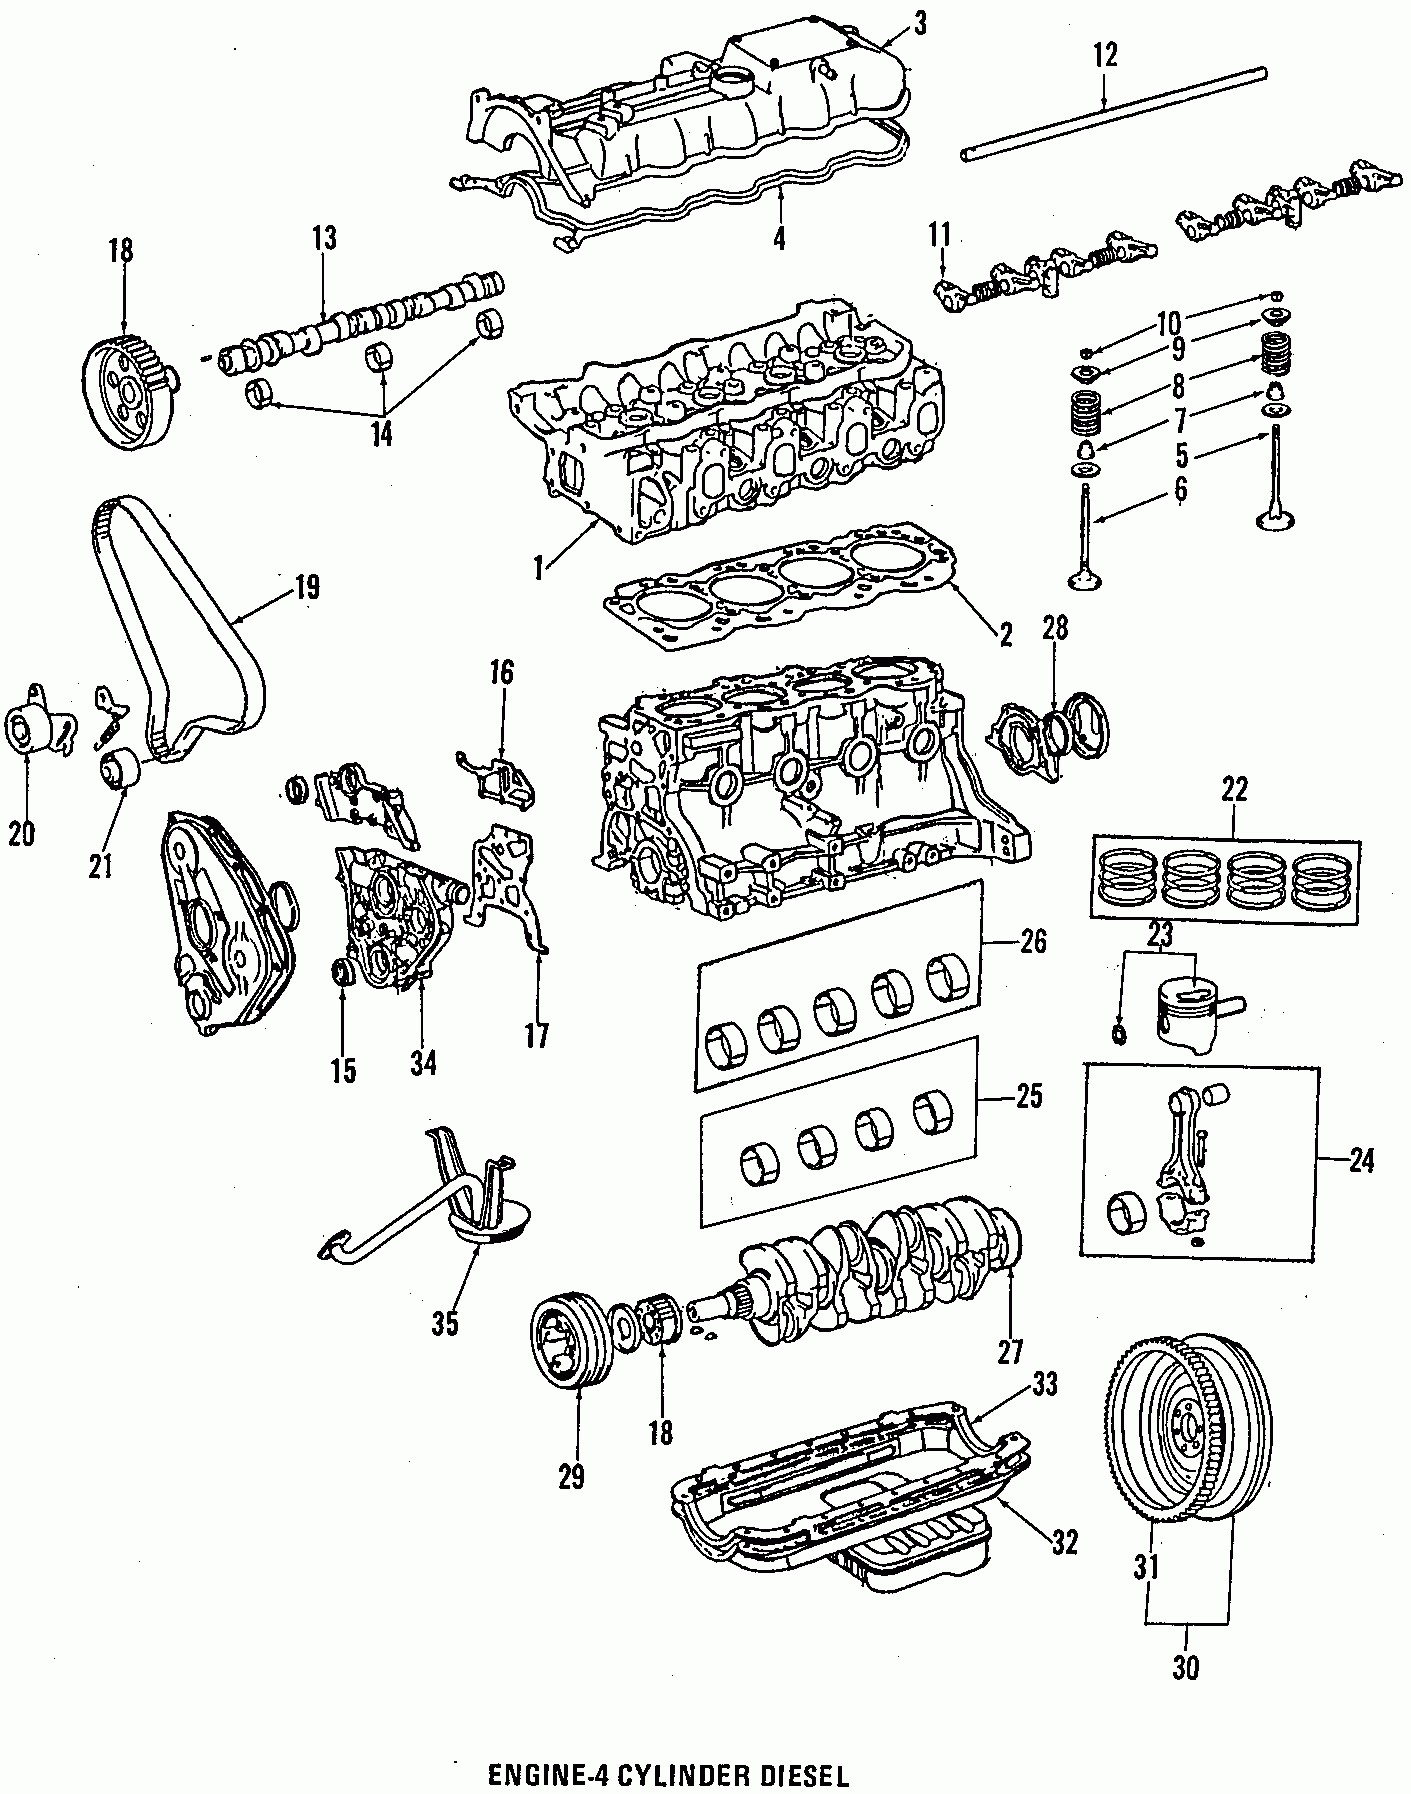 2005 toyota Tacoma Engine Diagram 2005 toyota Corolla Ce Parts Diagram toyota Wiring Diagrams Of 2005 toyota Tacoma Engine Diagram